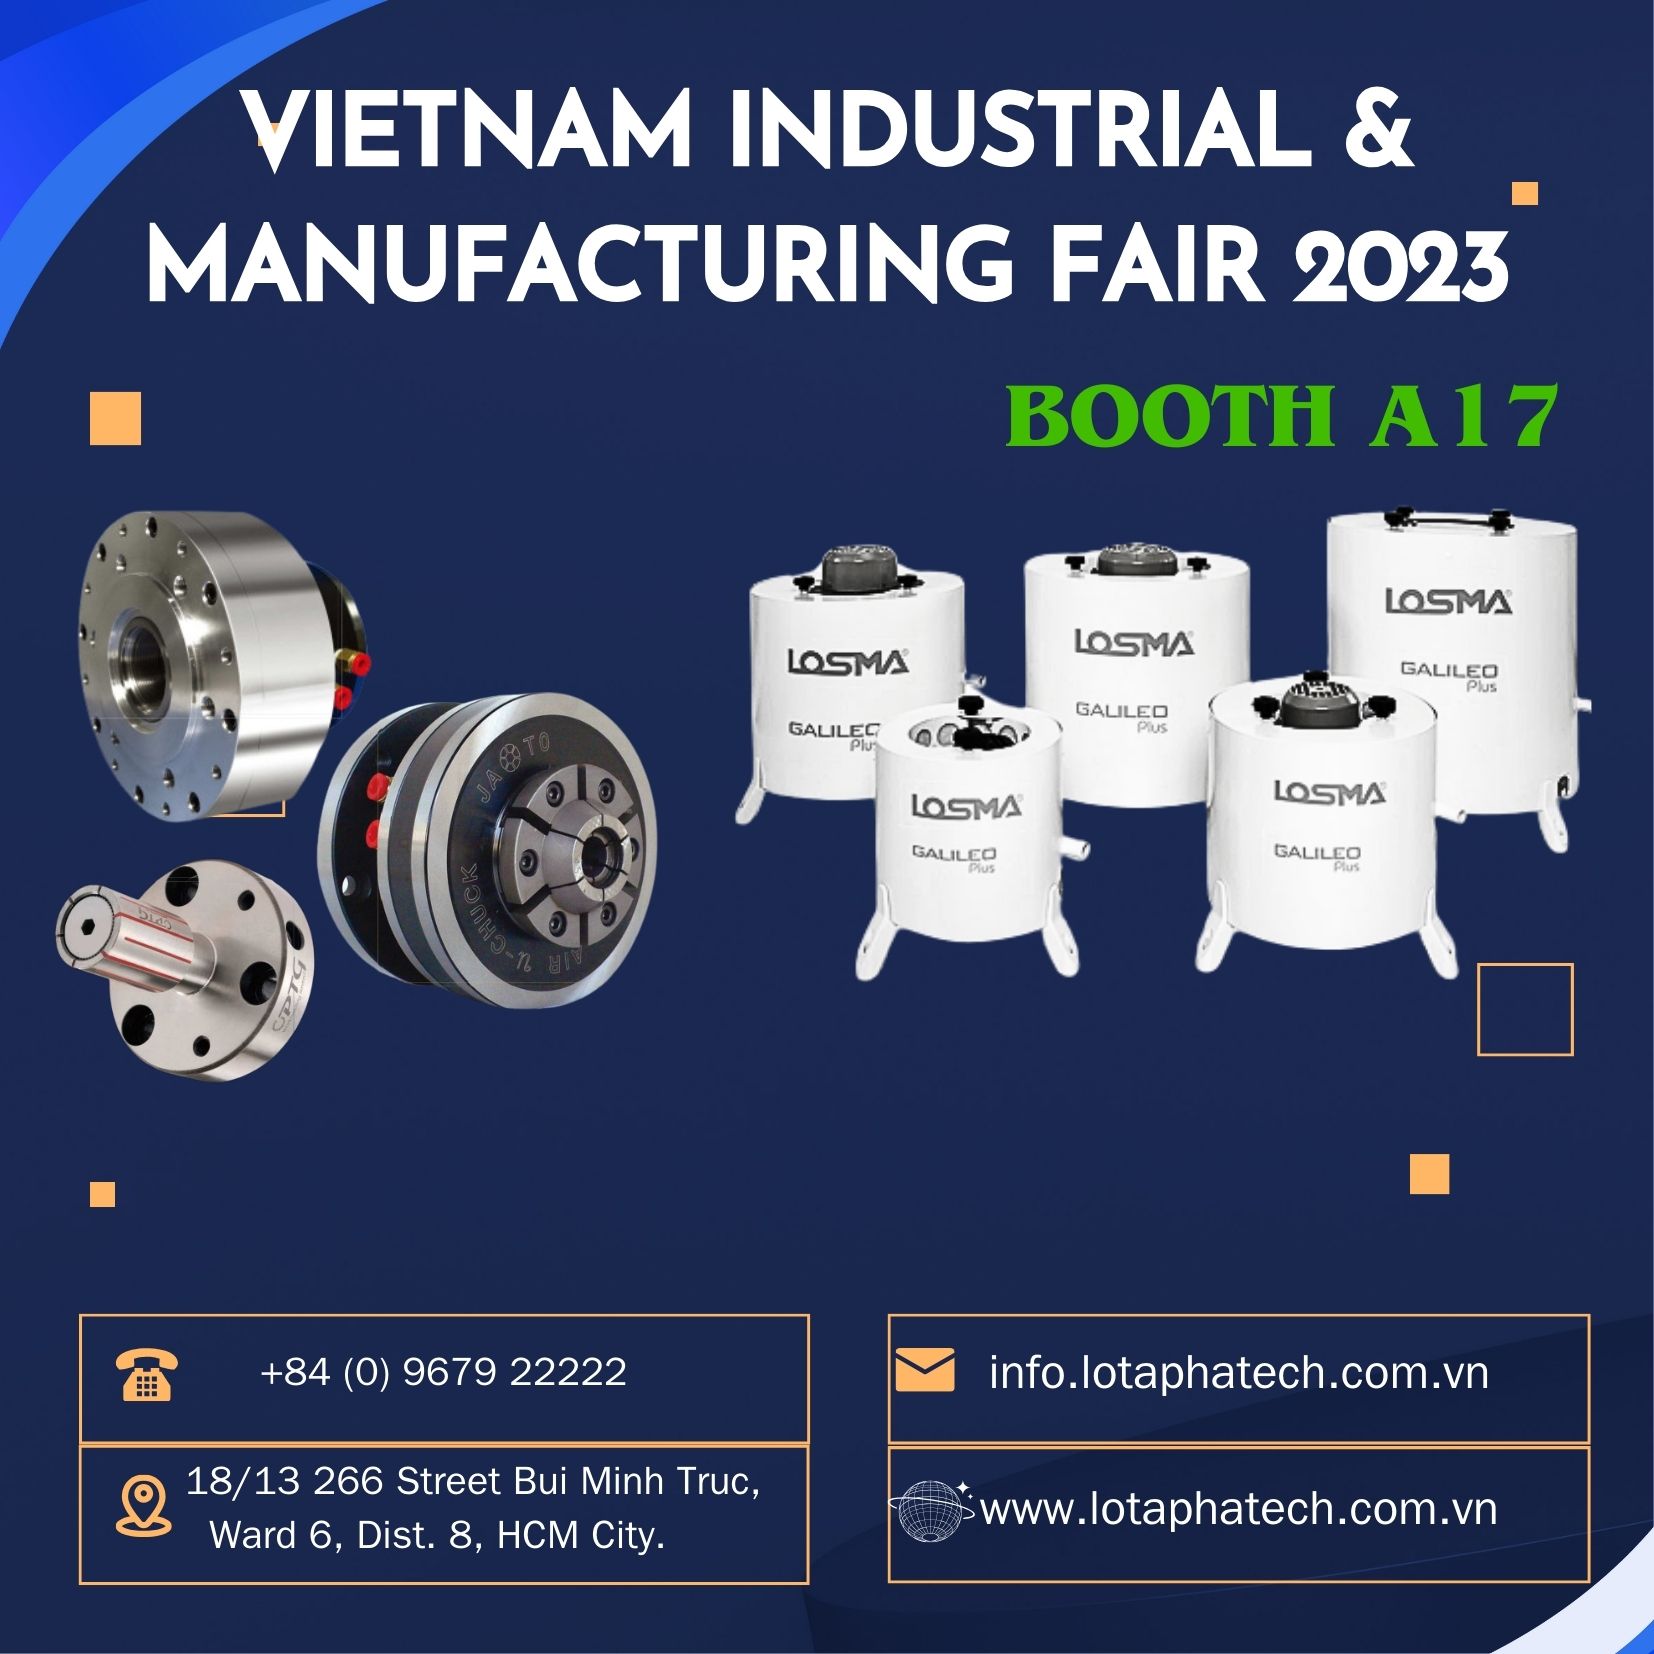 VIMF - Triển lãm Công nghiệp & Sản xuất Việt Nam 2023